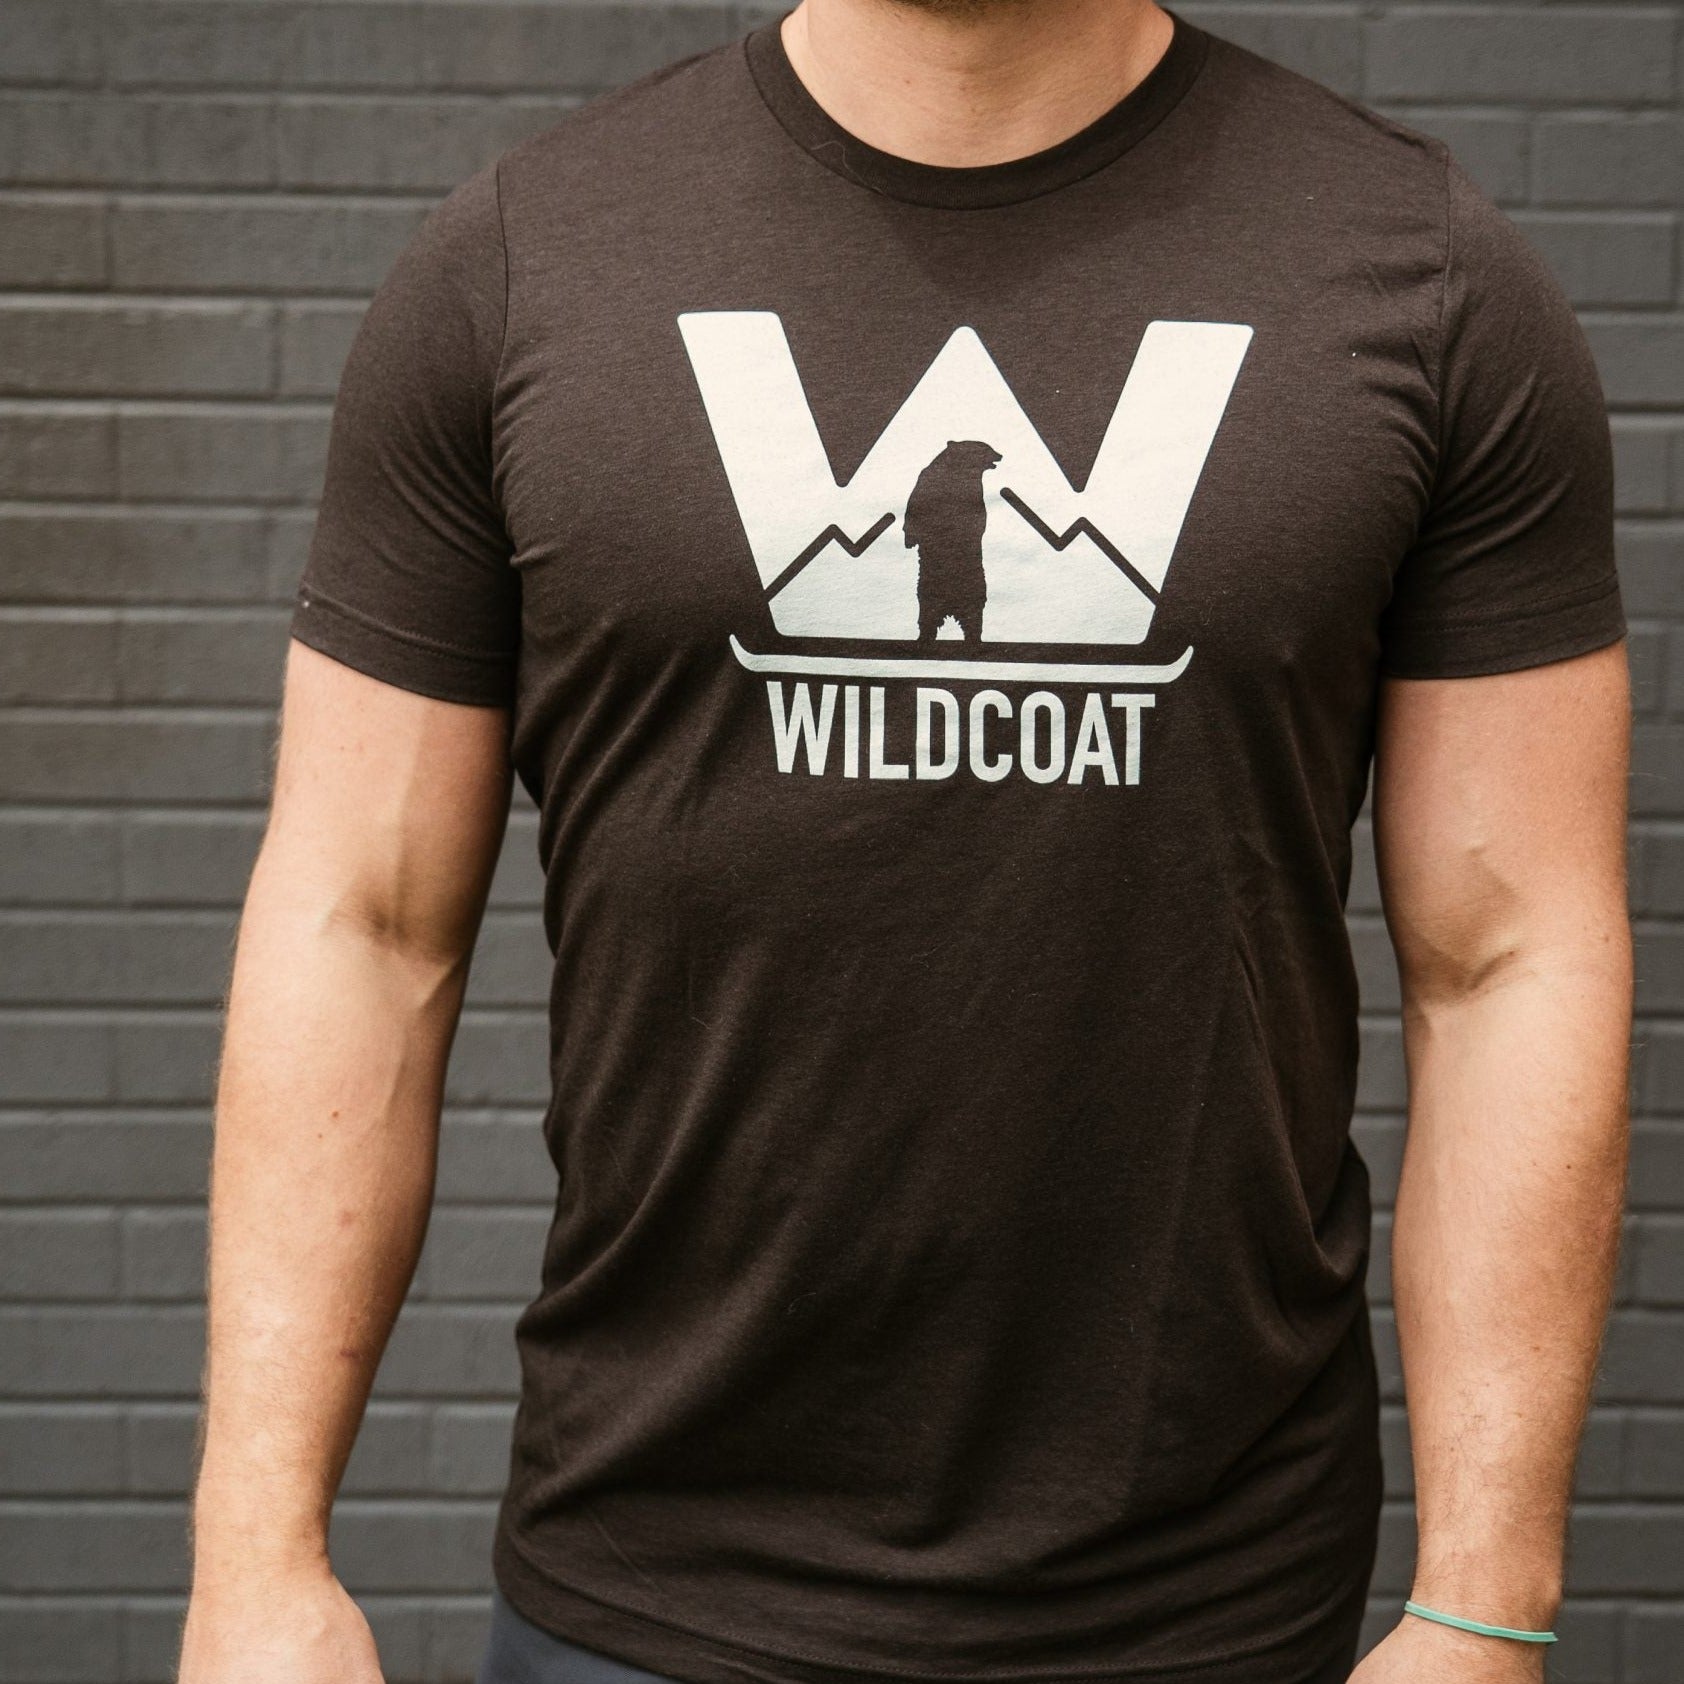 Wildcoat t-shirt